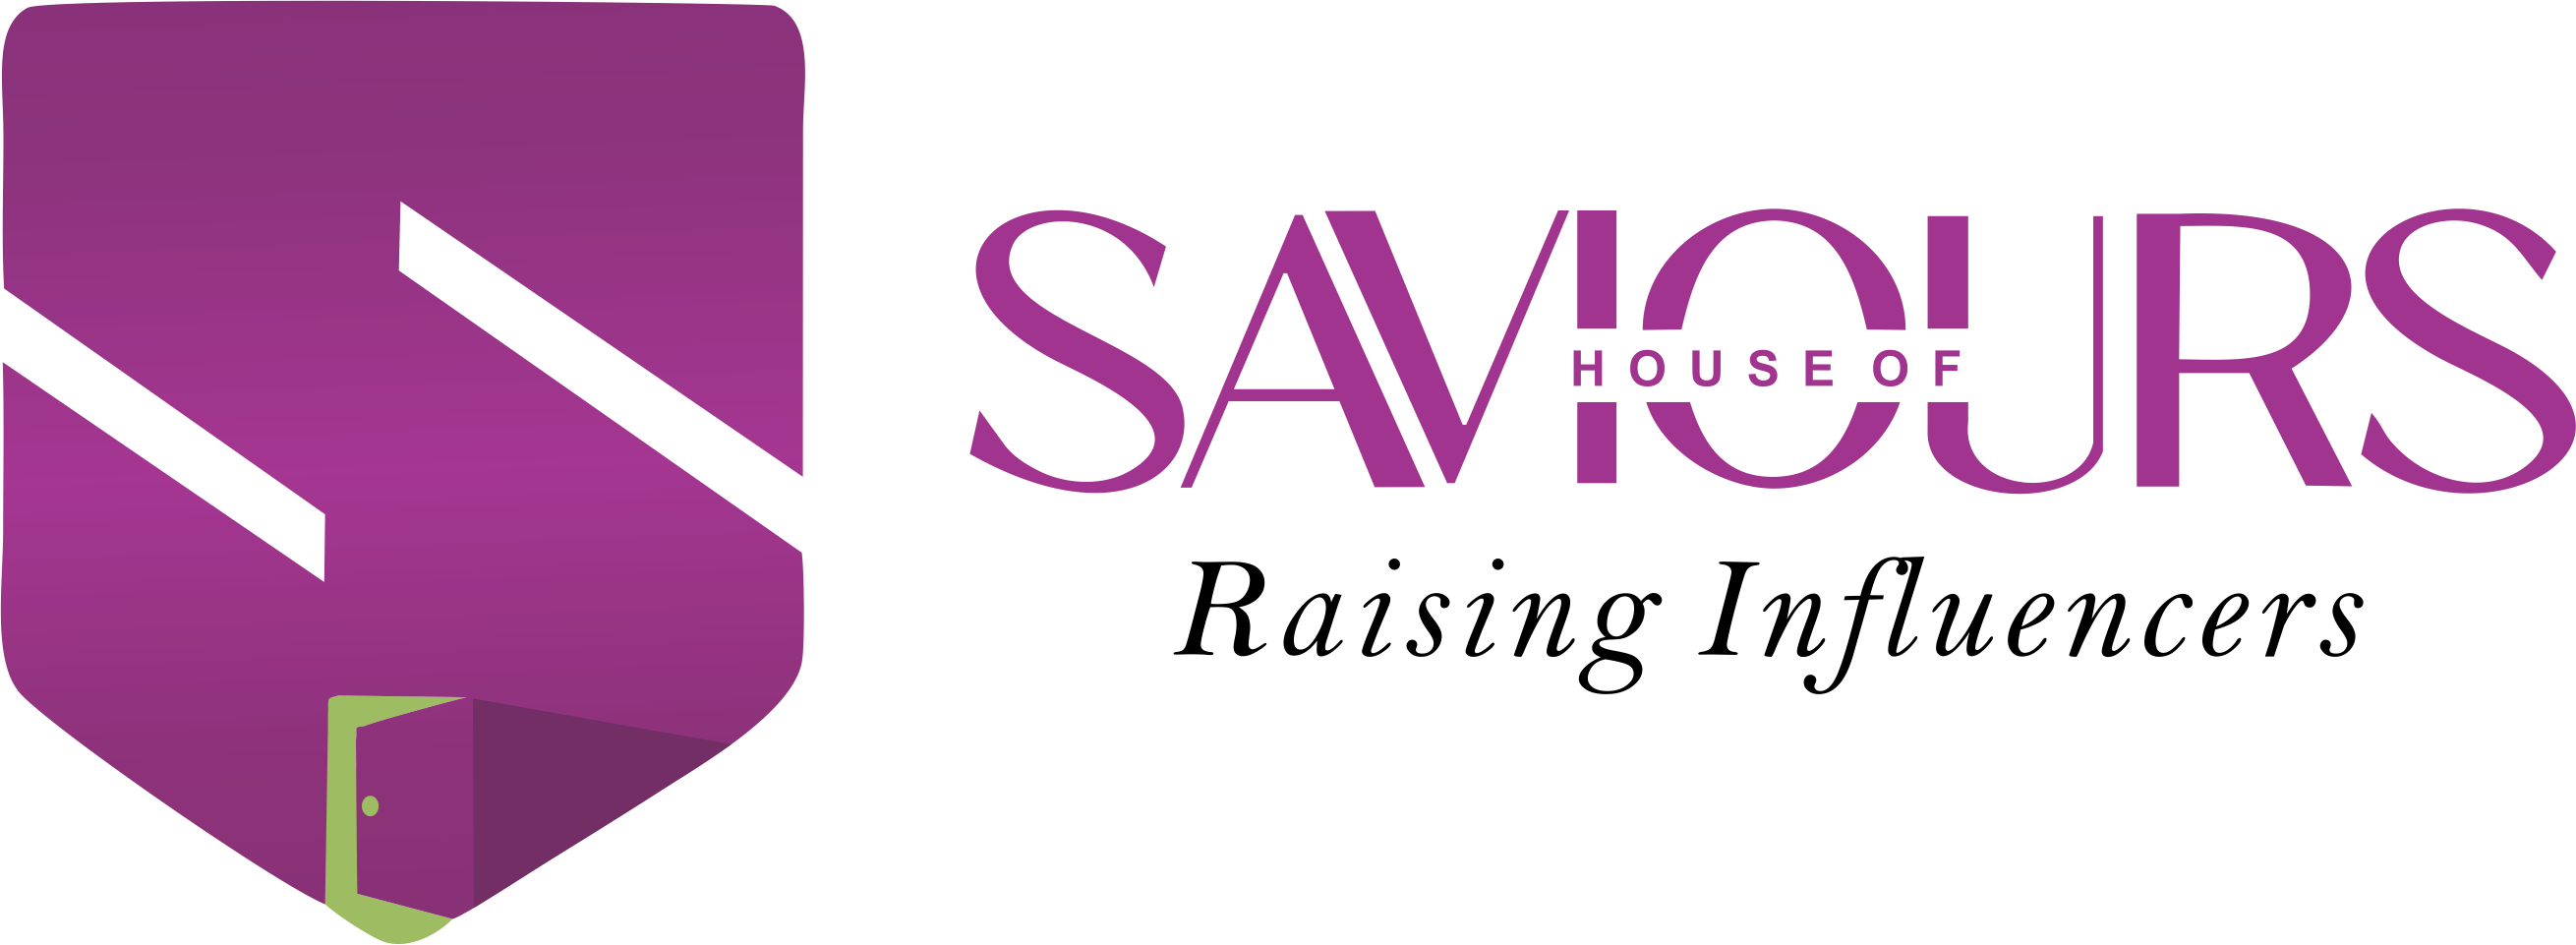 House of Saviour